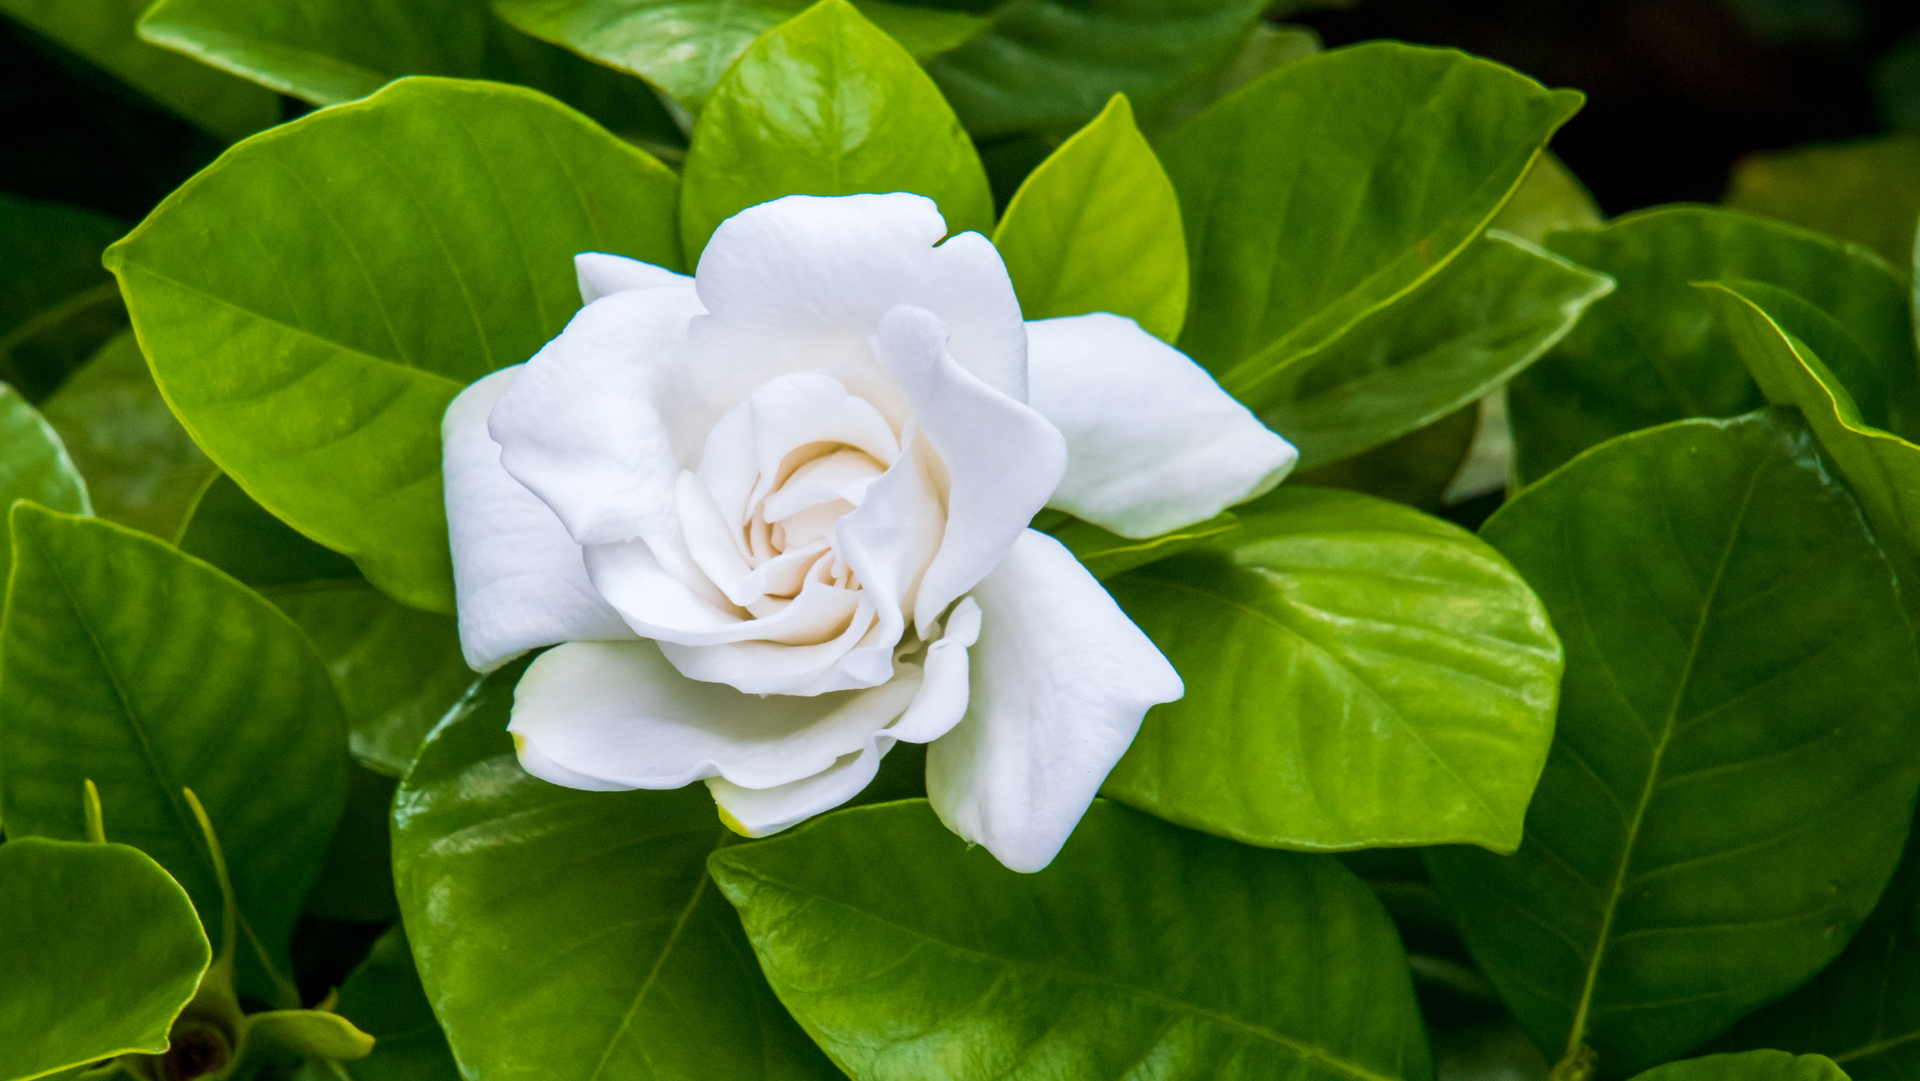 Na tym zdjęciu możemy zobaczyć uroczy biały kwiatek doniczkowy w pełnym rozkwicie. Jego delikatne płatki i subtelny aromat sprawiają, że jest to idealna roślina do ozdabiania wnętrz